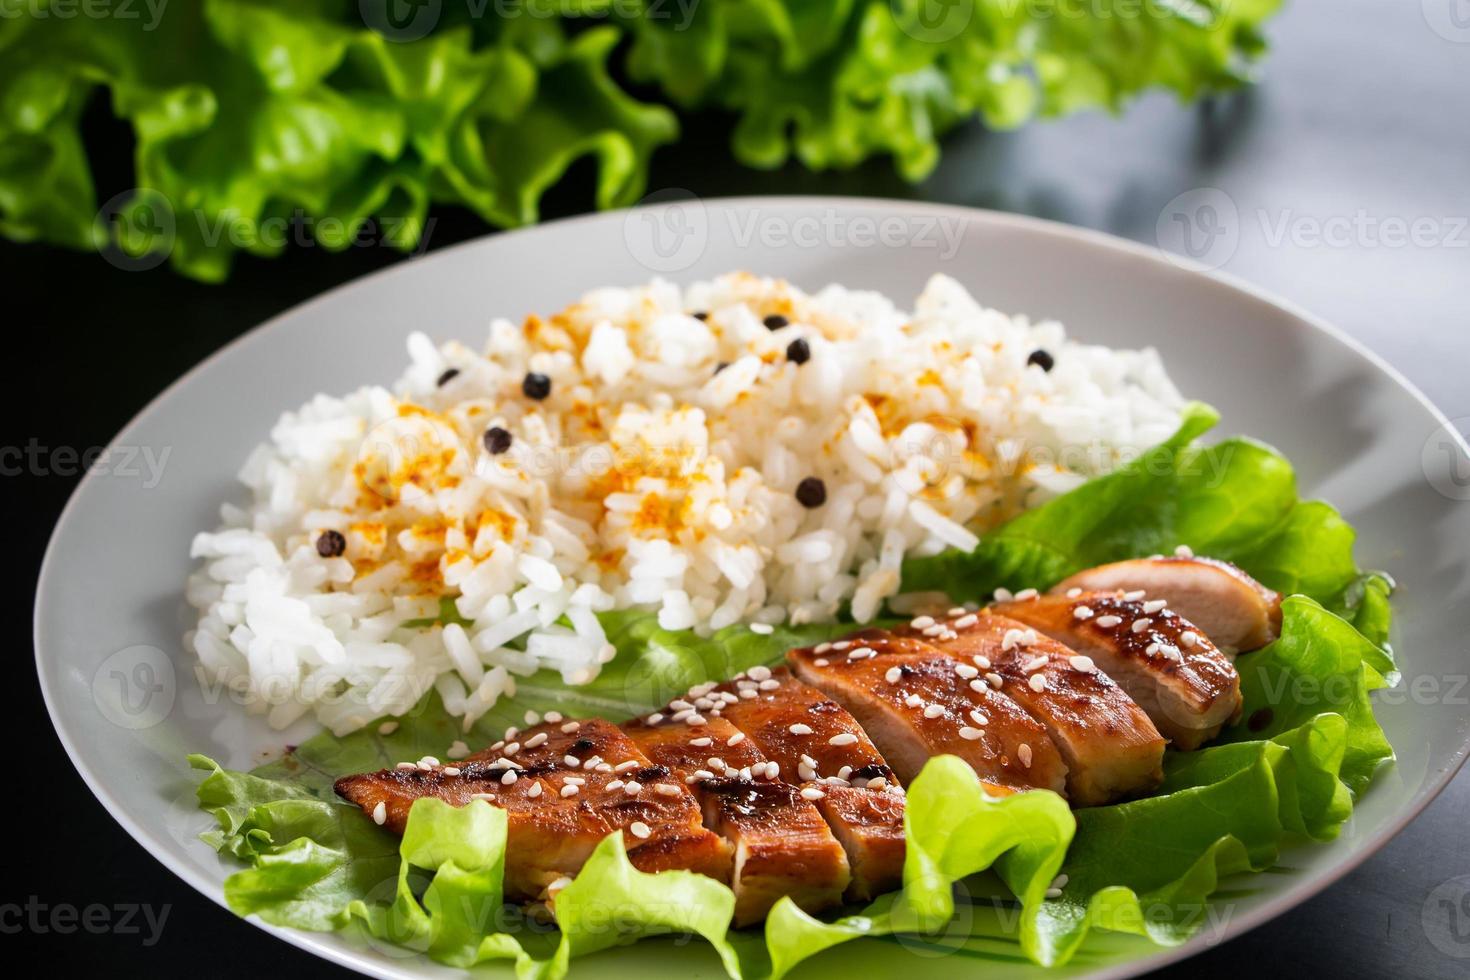 Comida casera - pollo teriyaki con arroz blanco y pimienta sobre un fondo negro foto